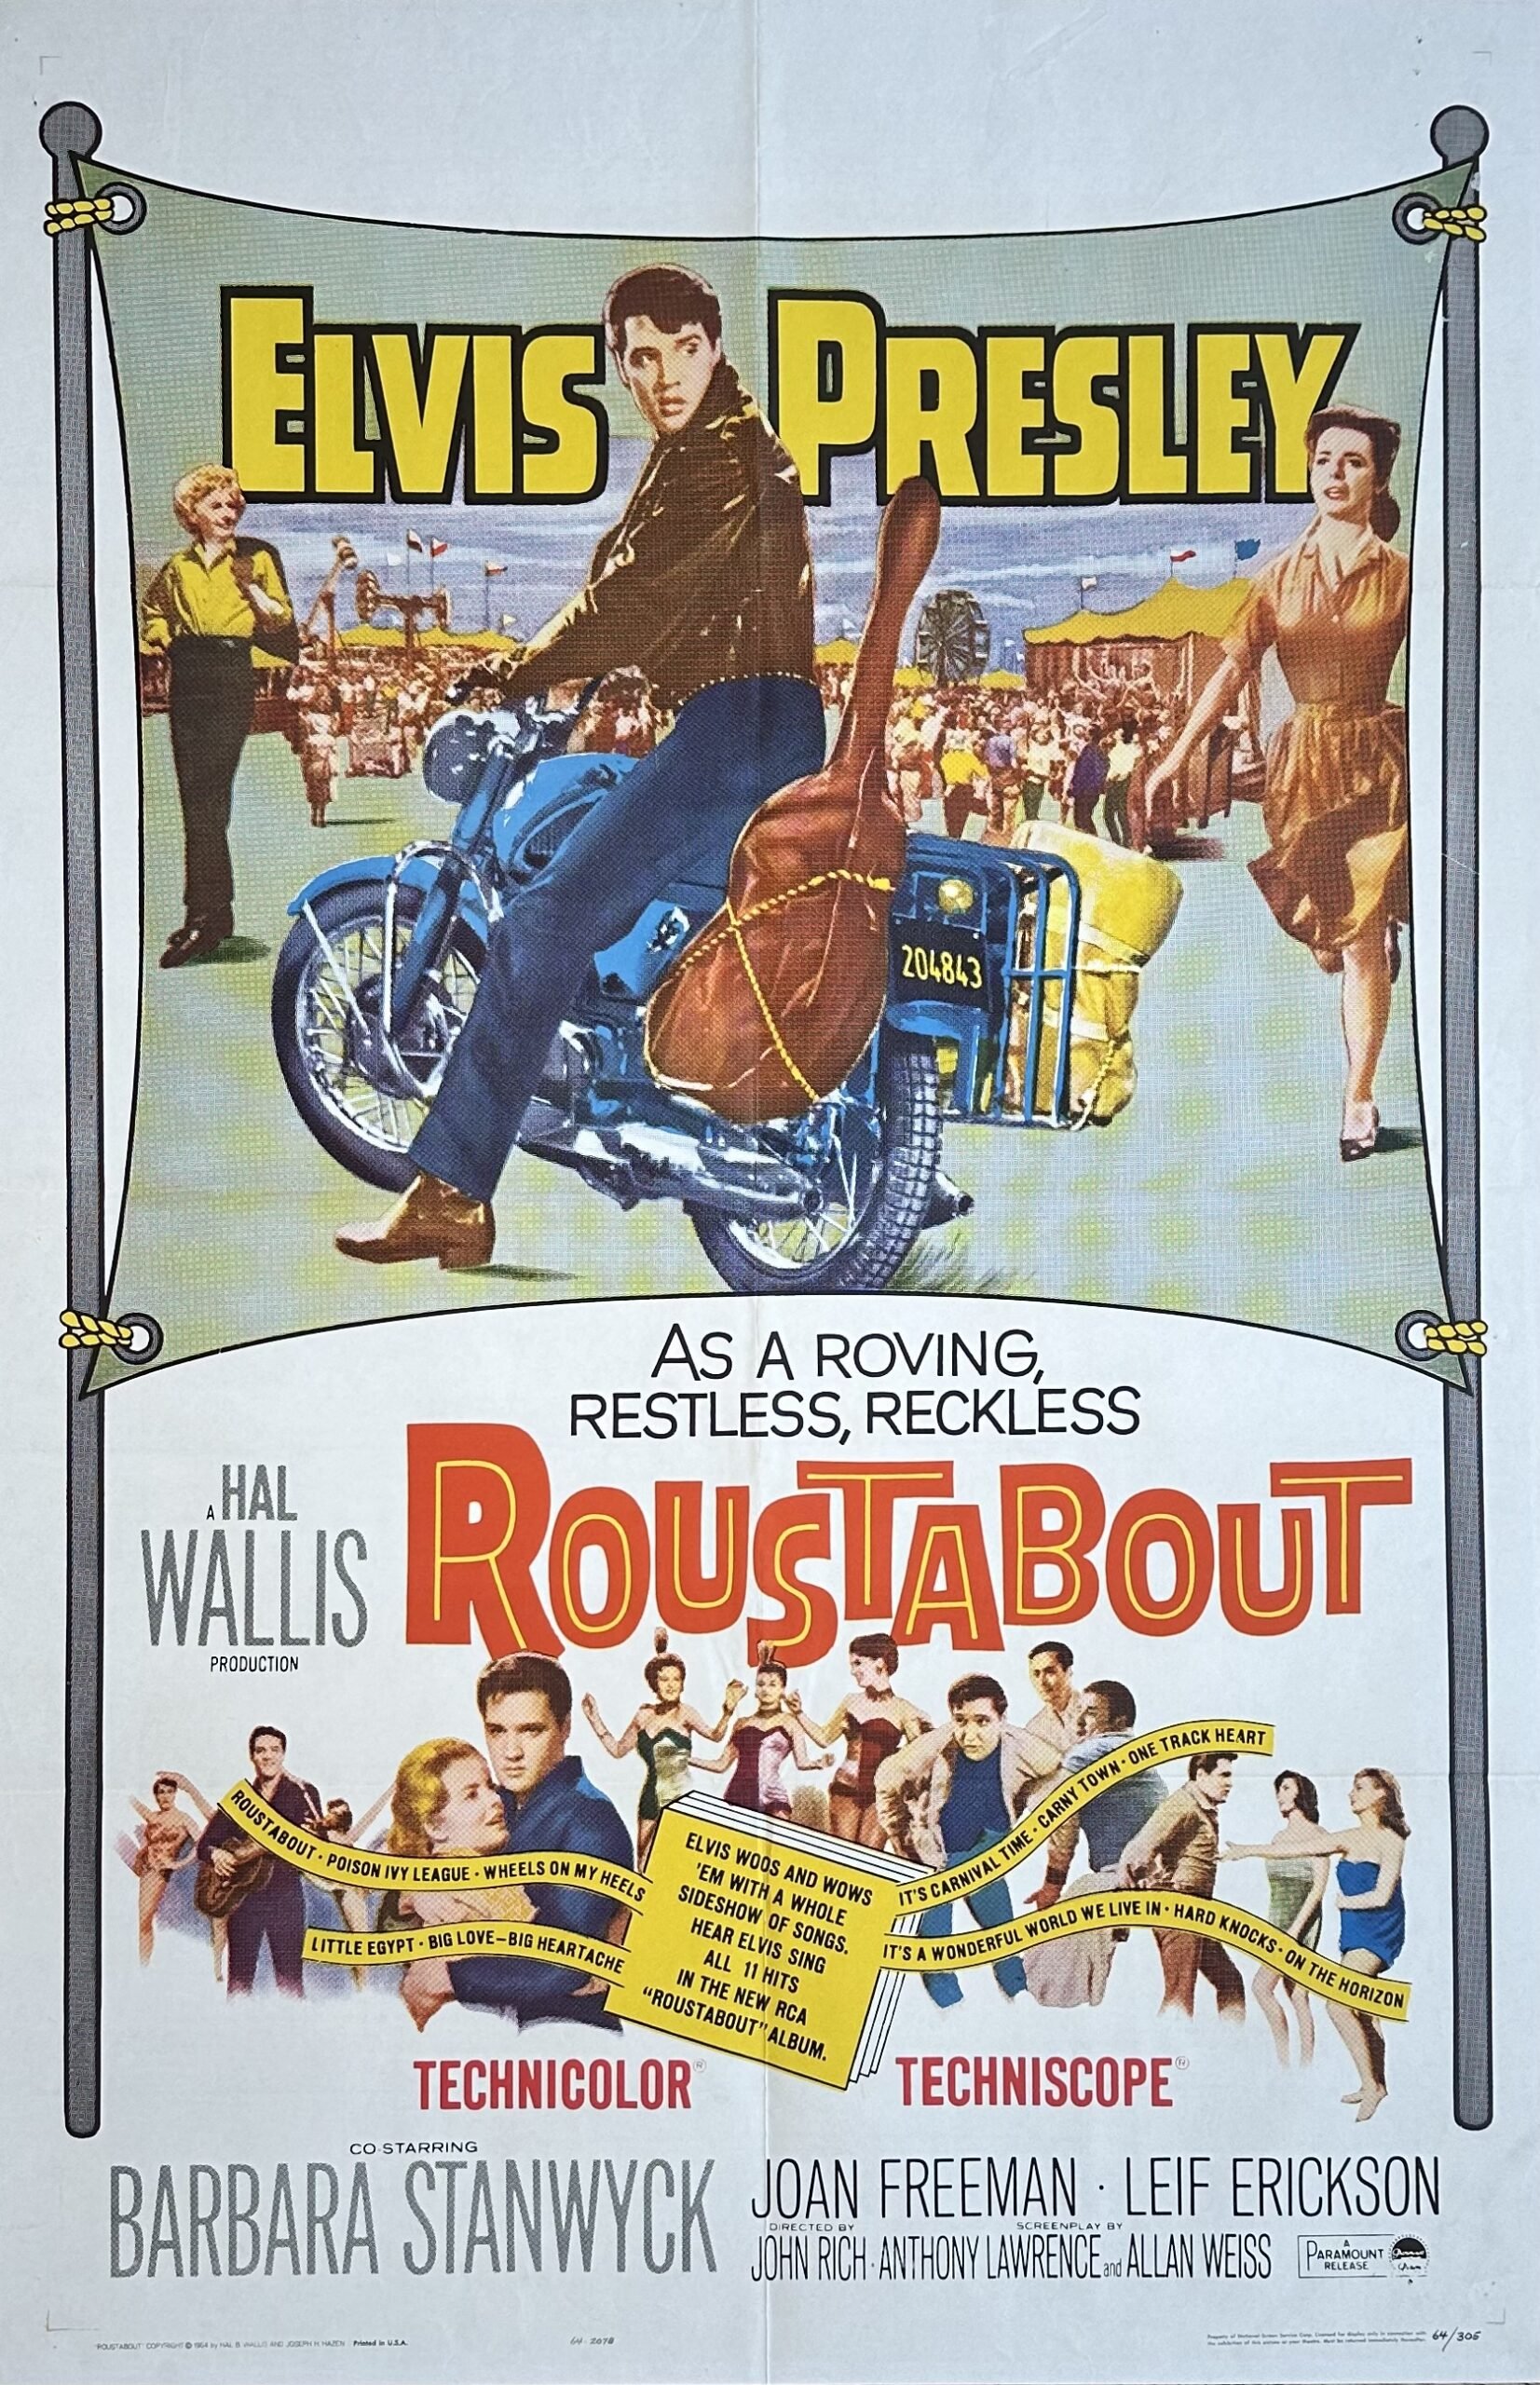 Original vintage cinema movie poster for Roustabout, starring Elvis Presley